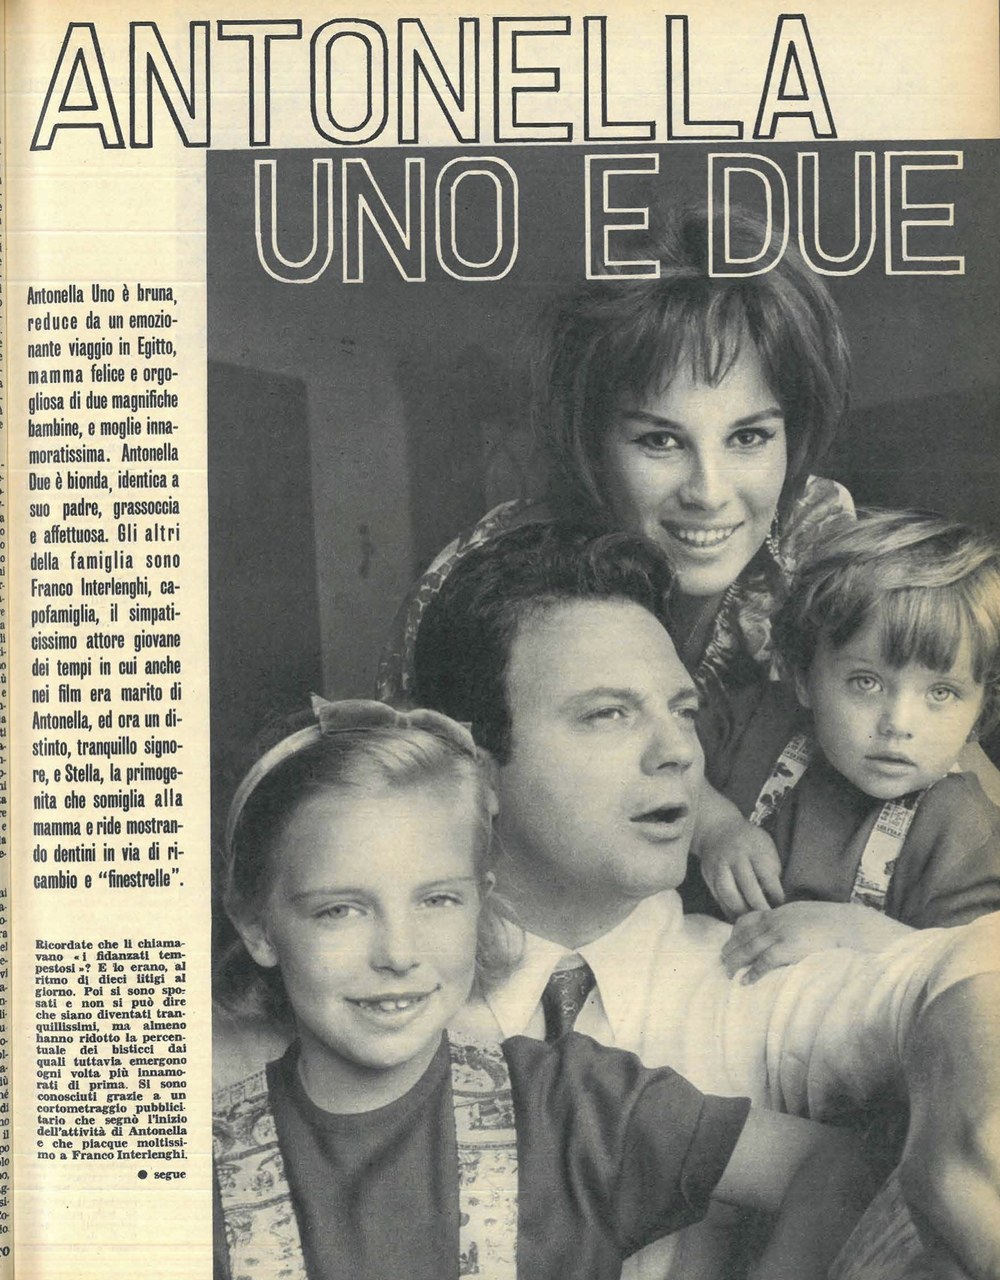  La famiglia Interlenghi sulle pagine della rivista Così, 1963